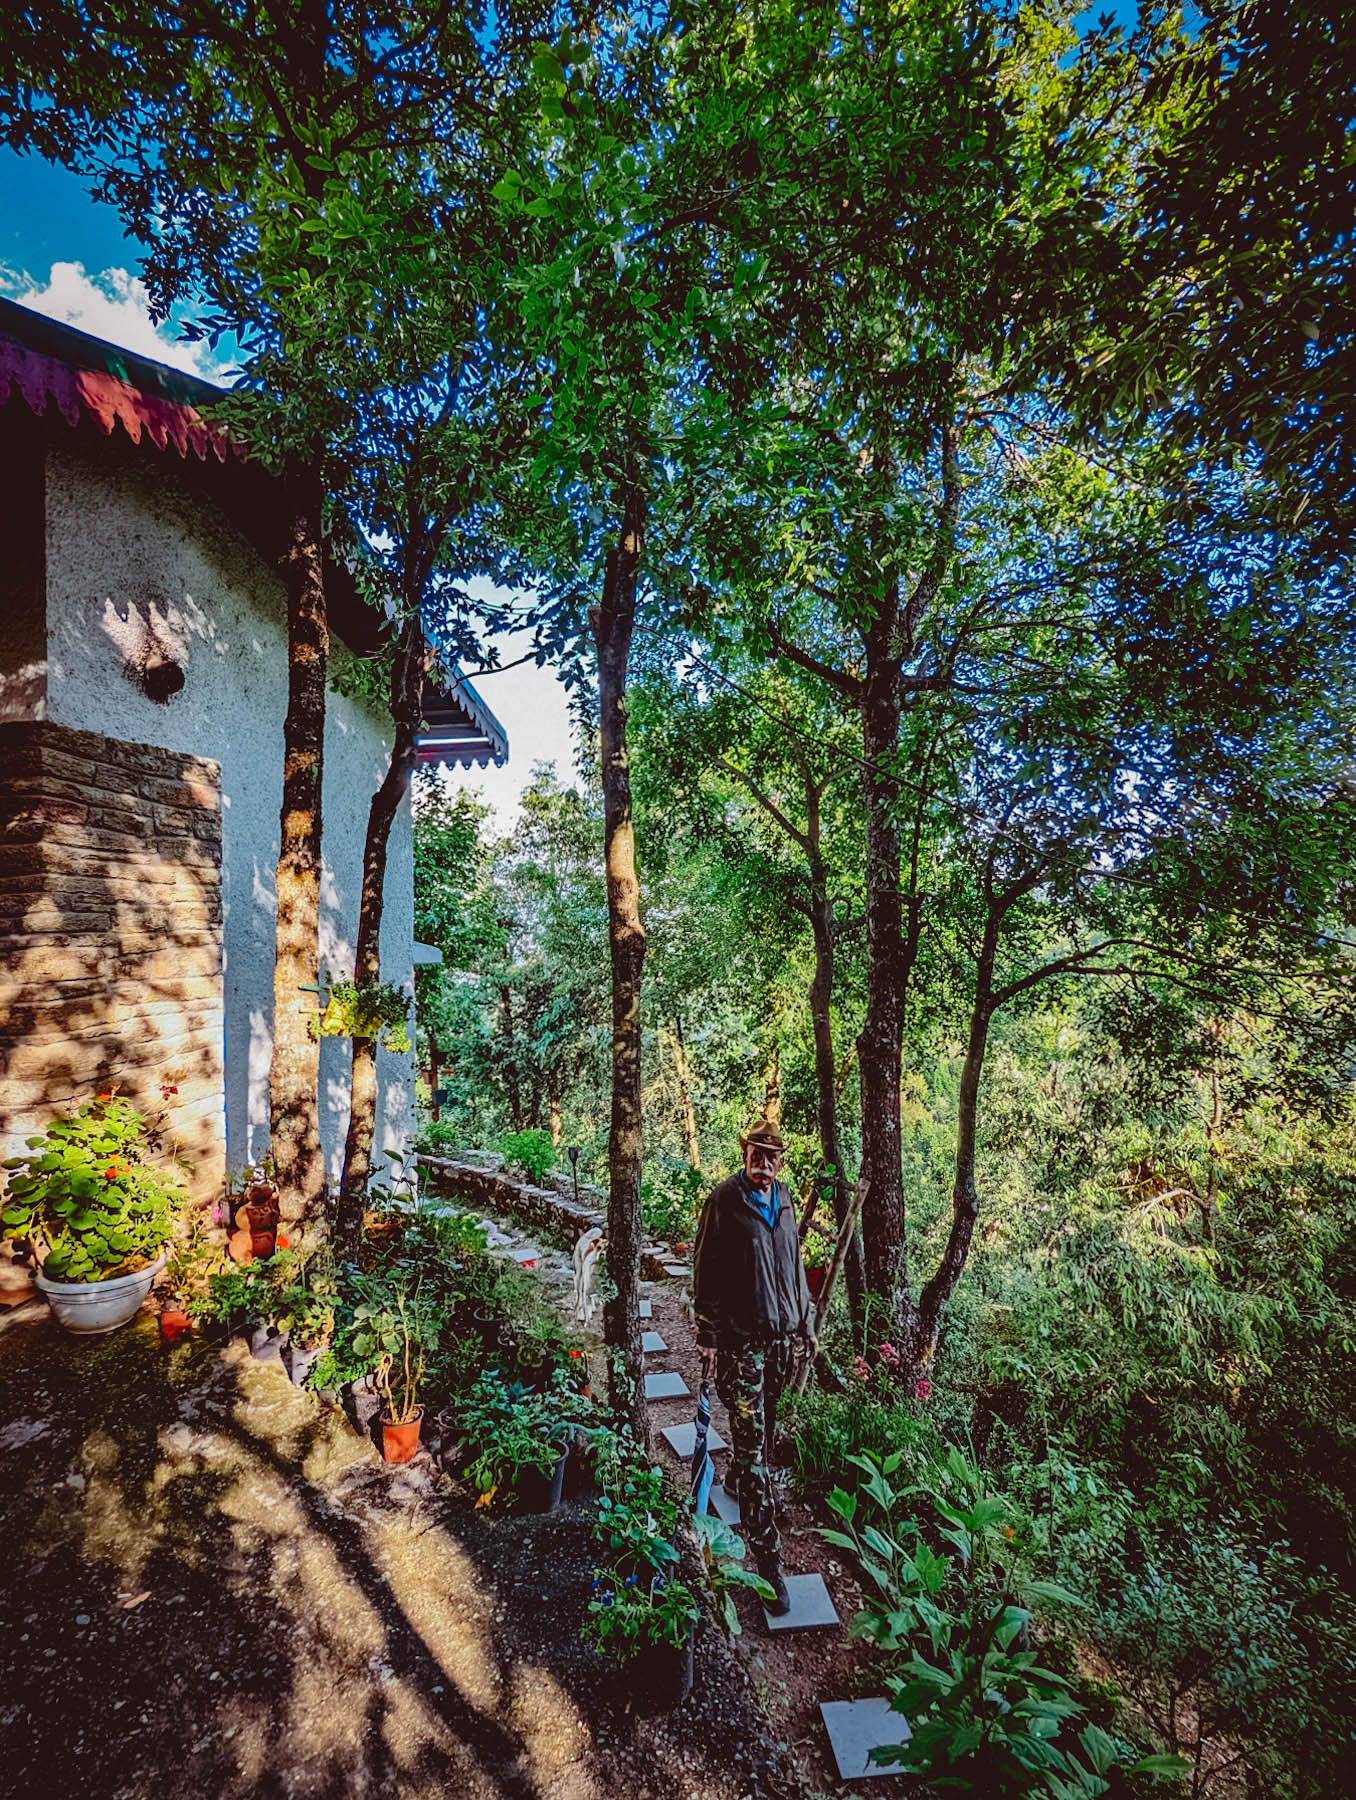 mukteshwar, airbnb cottage, rajat sethi, uttarakhand, iris cottage, eyesfordestinations, uttarakhand cottage, uttarakhand homestay, naina redhu, naina, travel blogger, travel photographer, professional photographer, hospitality professional